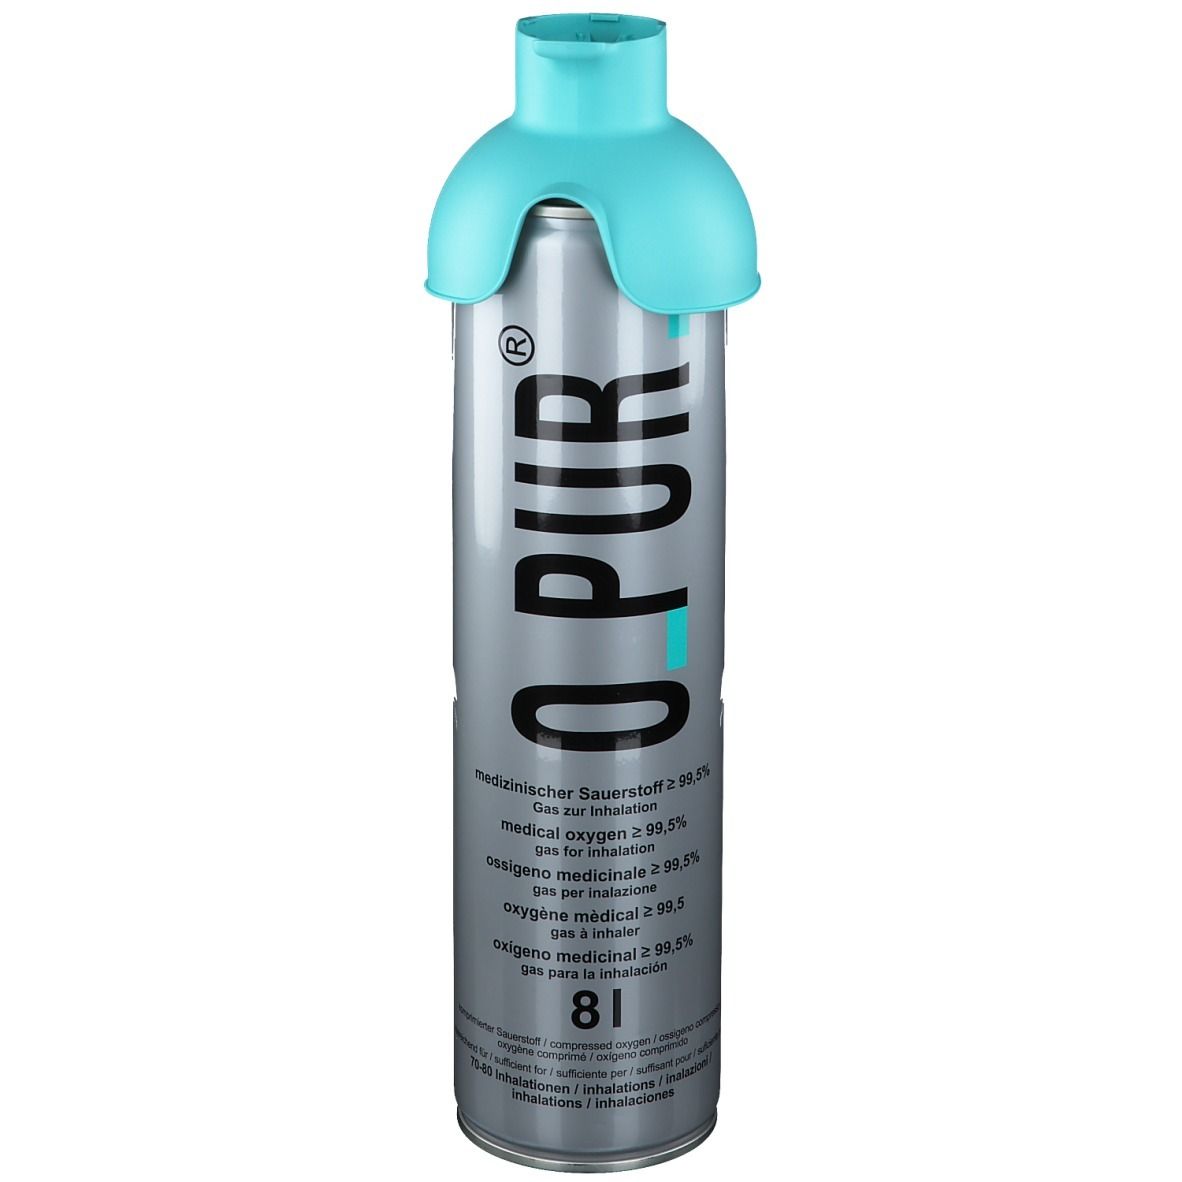 Sauerstoffflasche 14 Liter mit 2 Inhalation Masken, Mapeau Sauerstoff Dose, Häusliche Pflege, Pflege, Online Waxing & Kosmetik bestellen